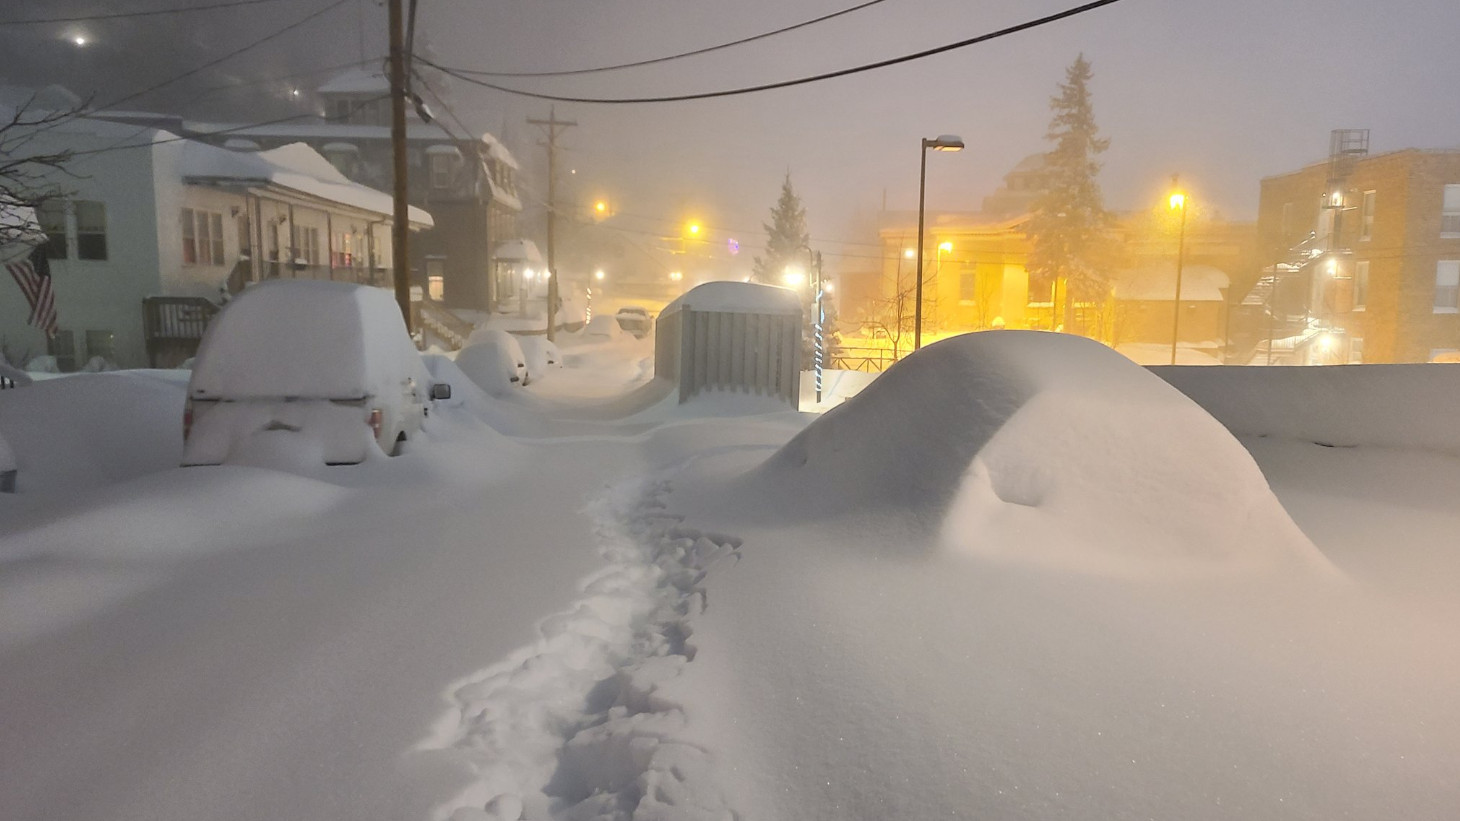 Κακοκαιρία ιστορικών διαστάσεων στις ΗΠΑ: Πόλεις θαμμένες κάτω από το χιόνι - Στέλνουν διασώστες να σώσουν... διασώστες